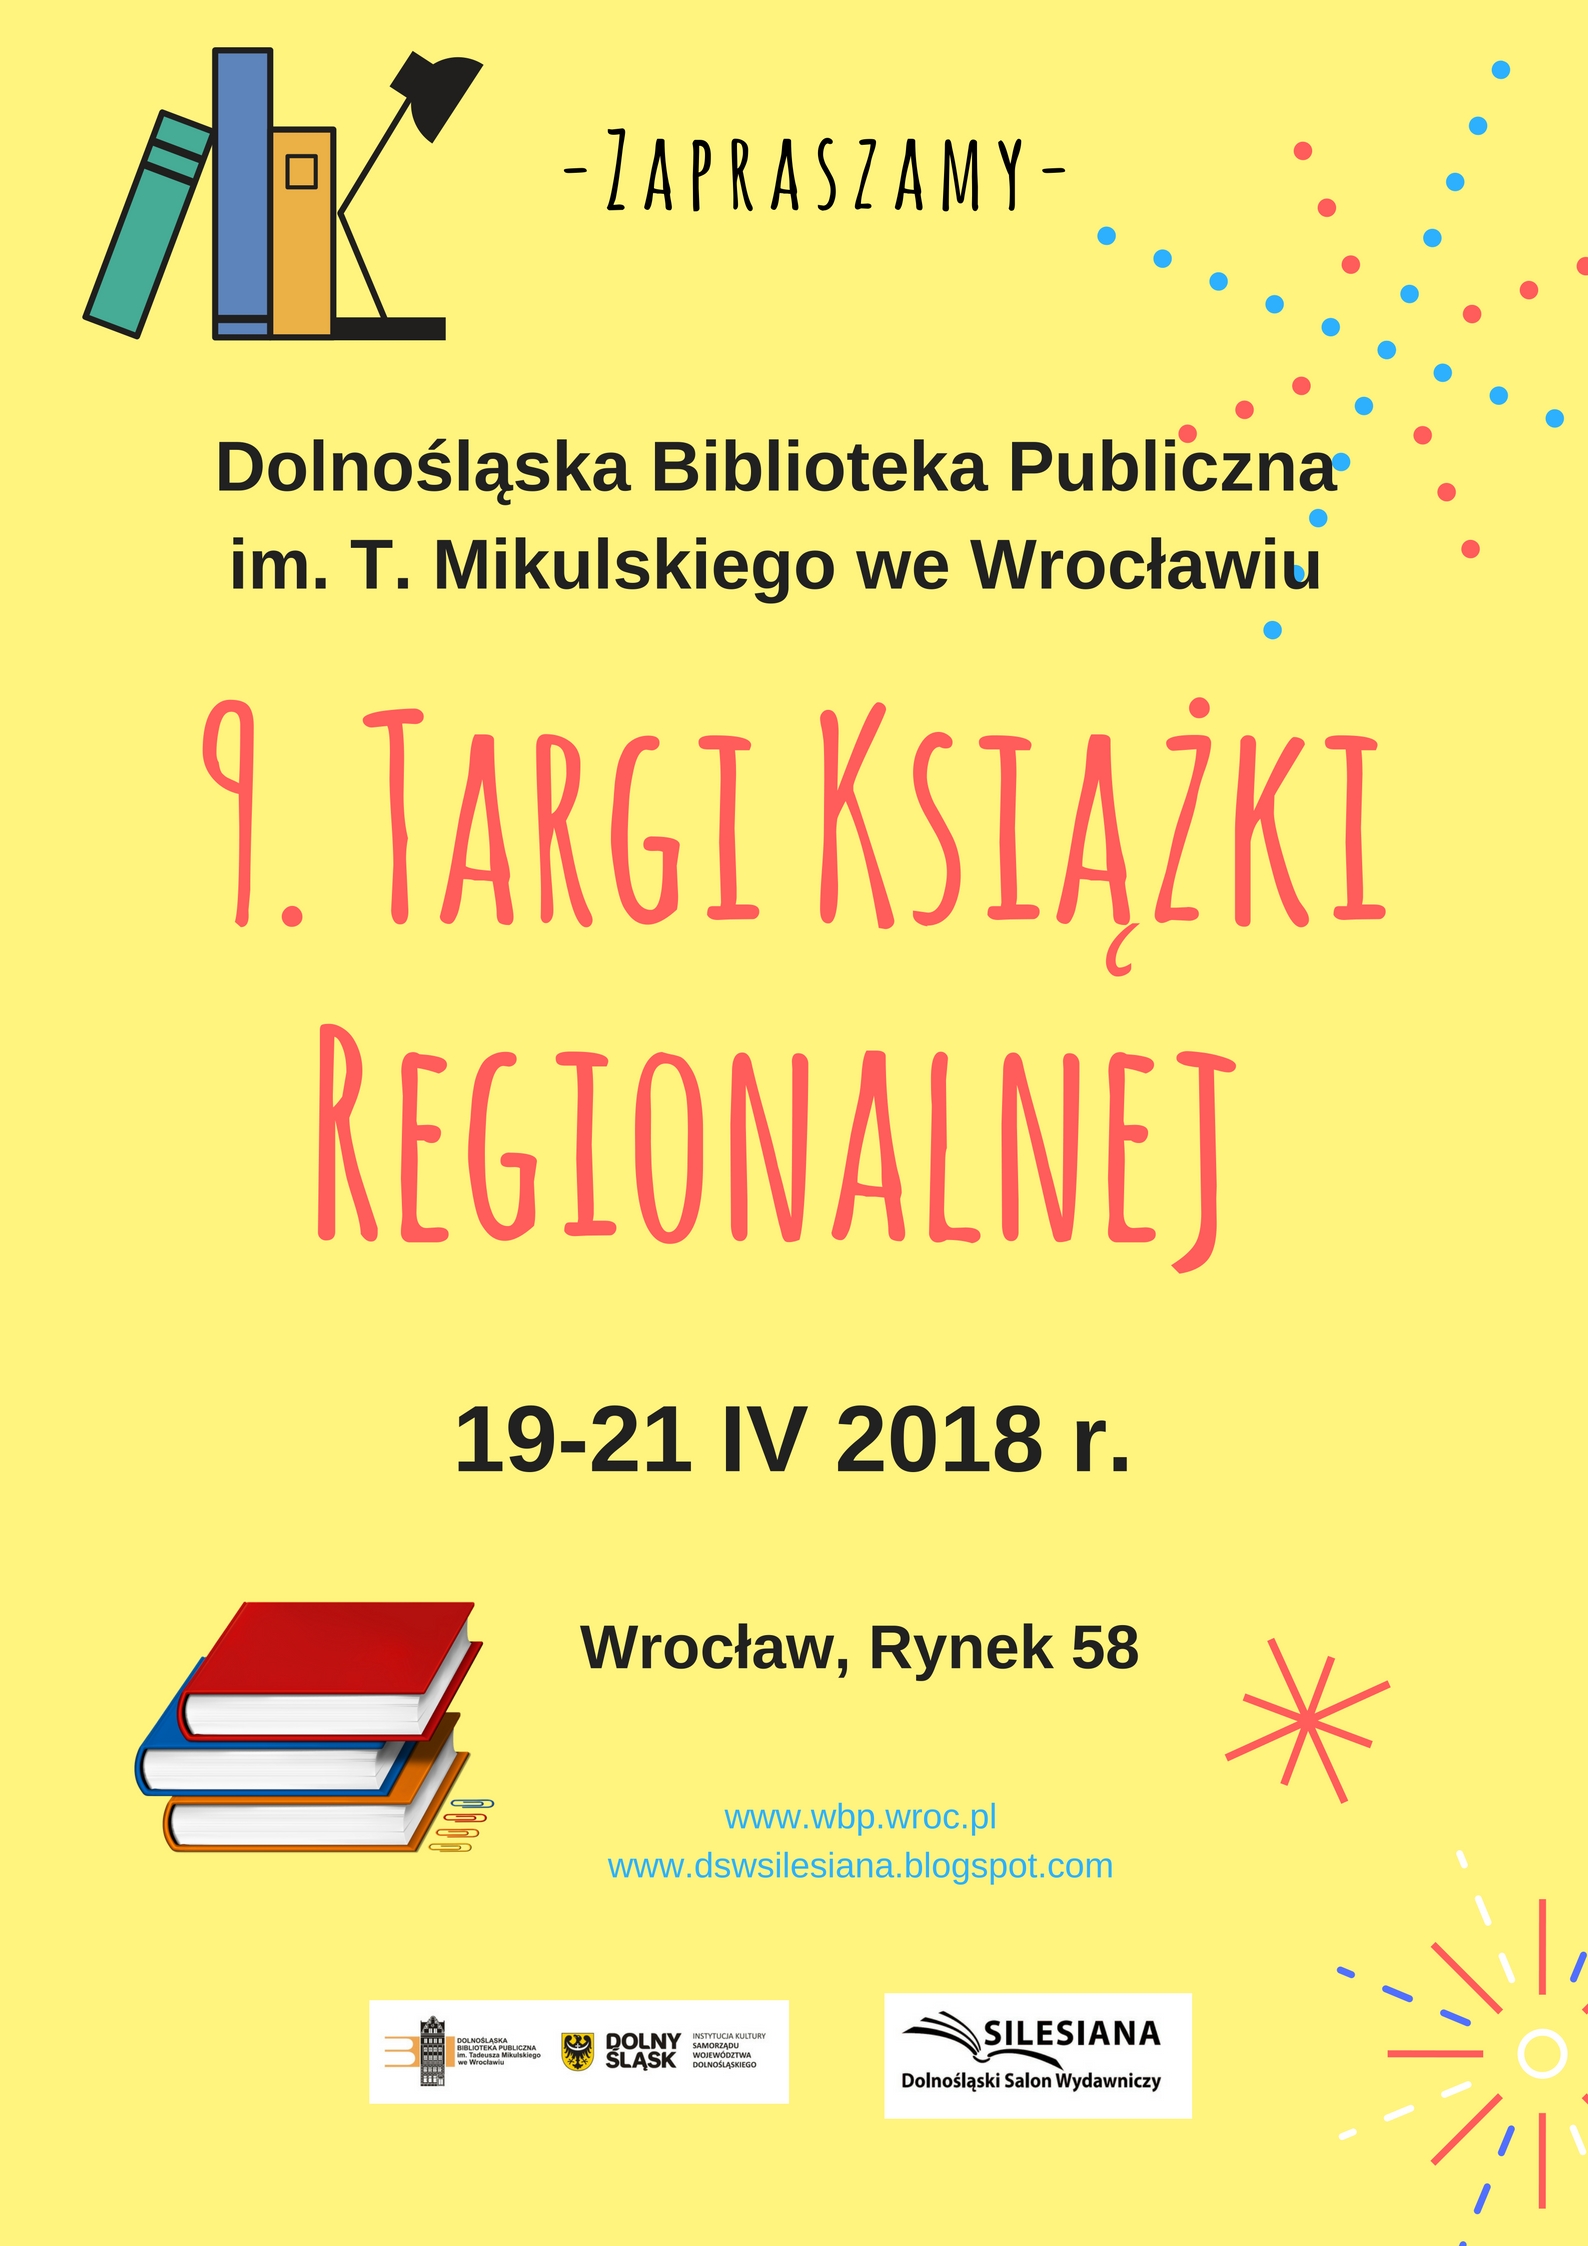 Targi Książki Regionalnej Silesiana 2018,  Dolnośląska Biblioteka Publiczna im. T. Mikulskiego,